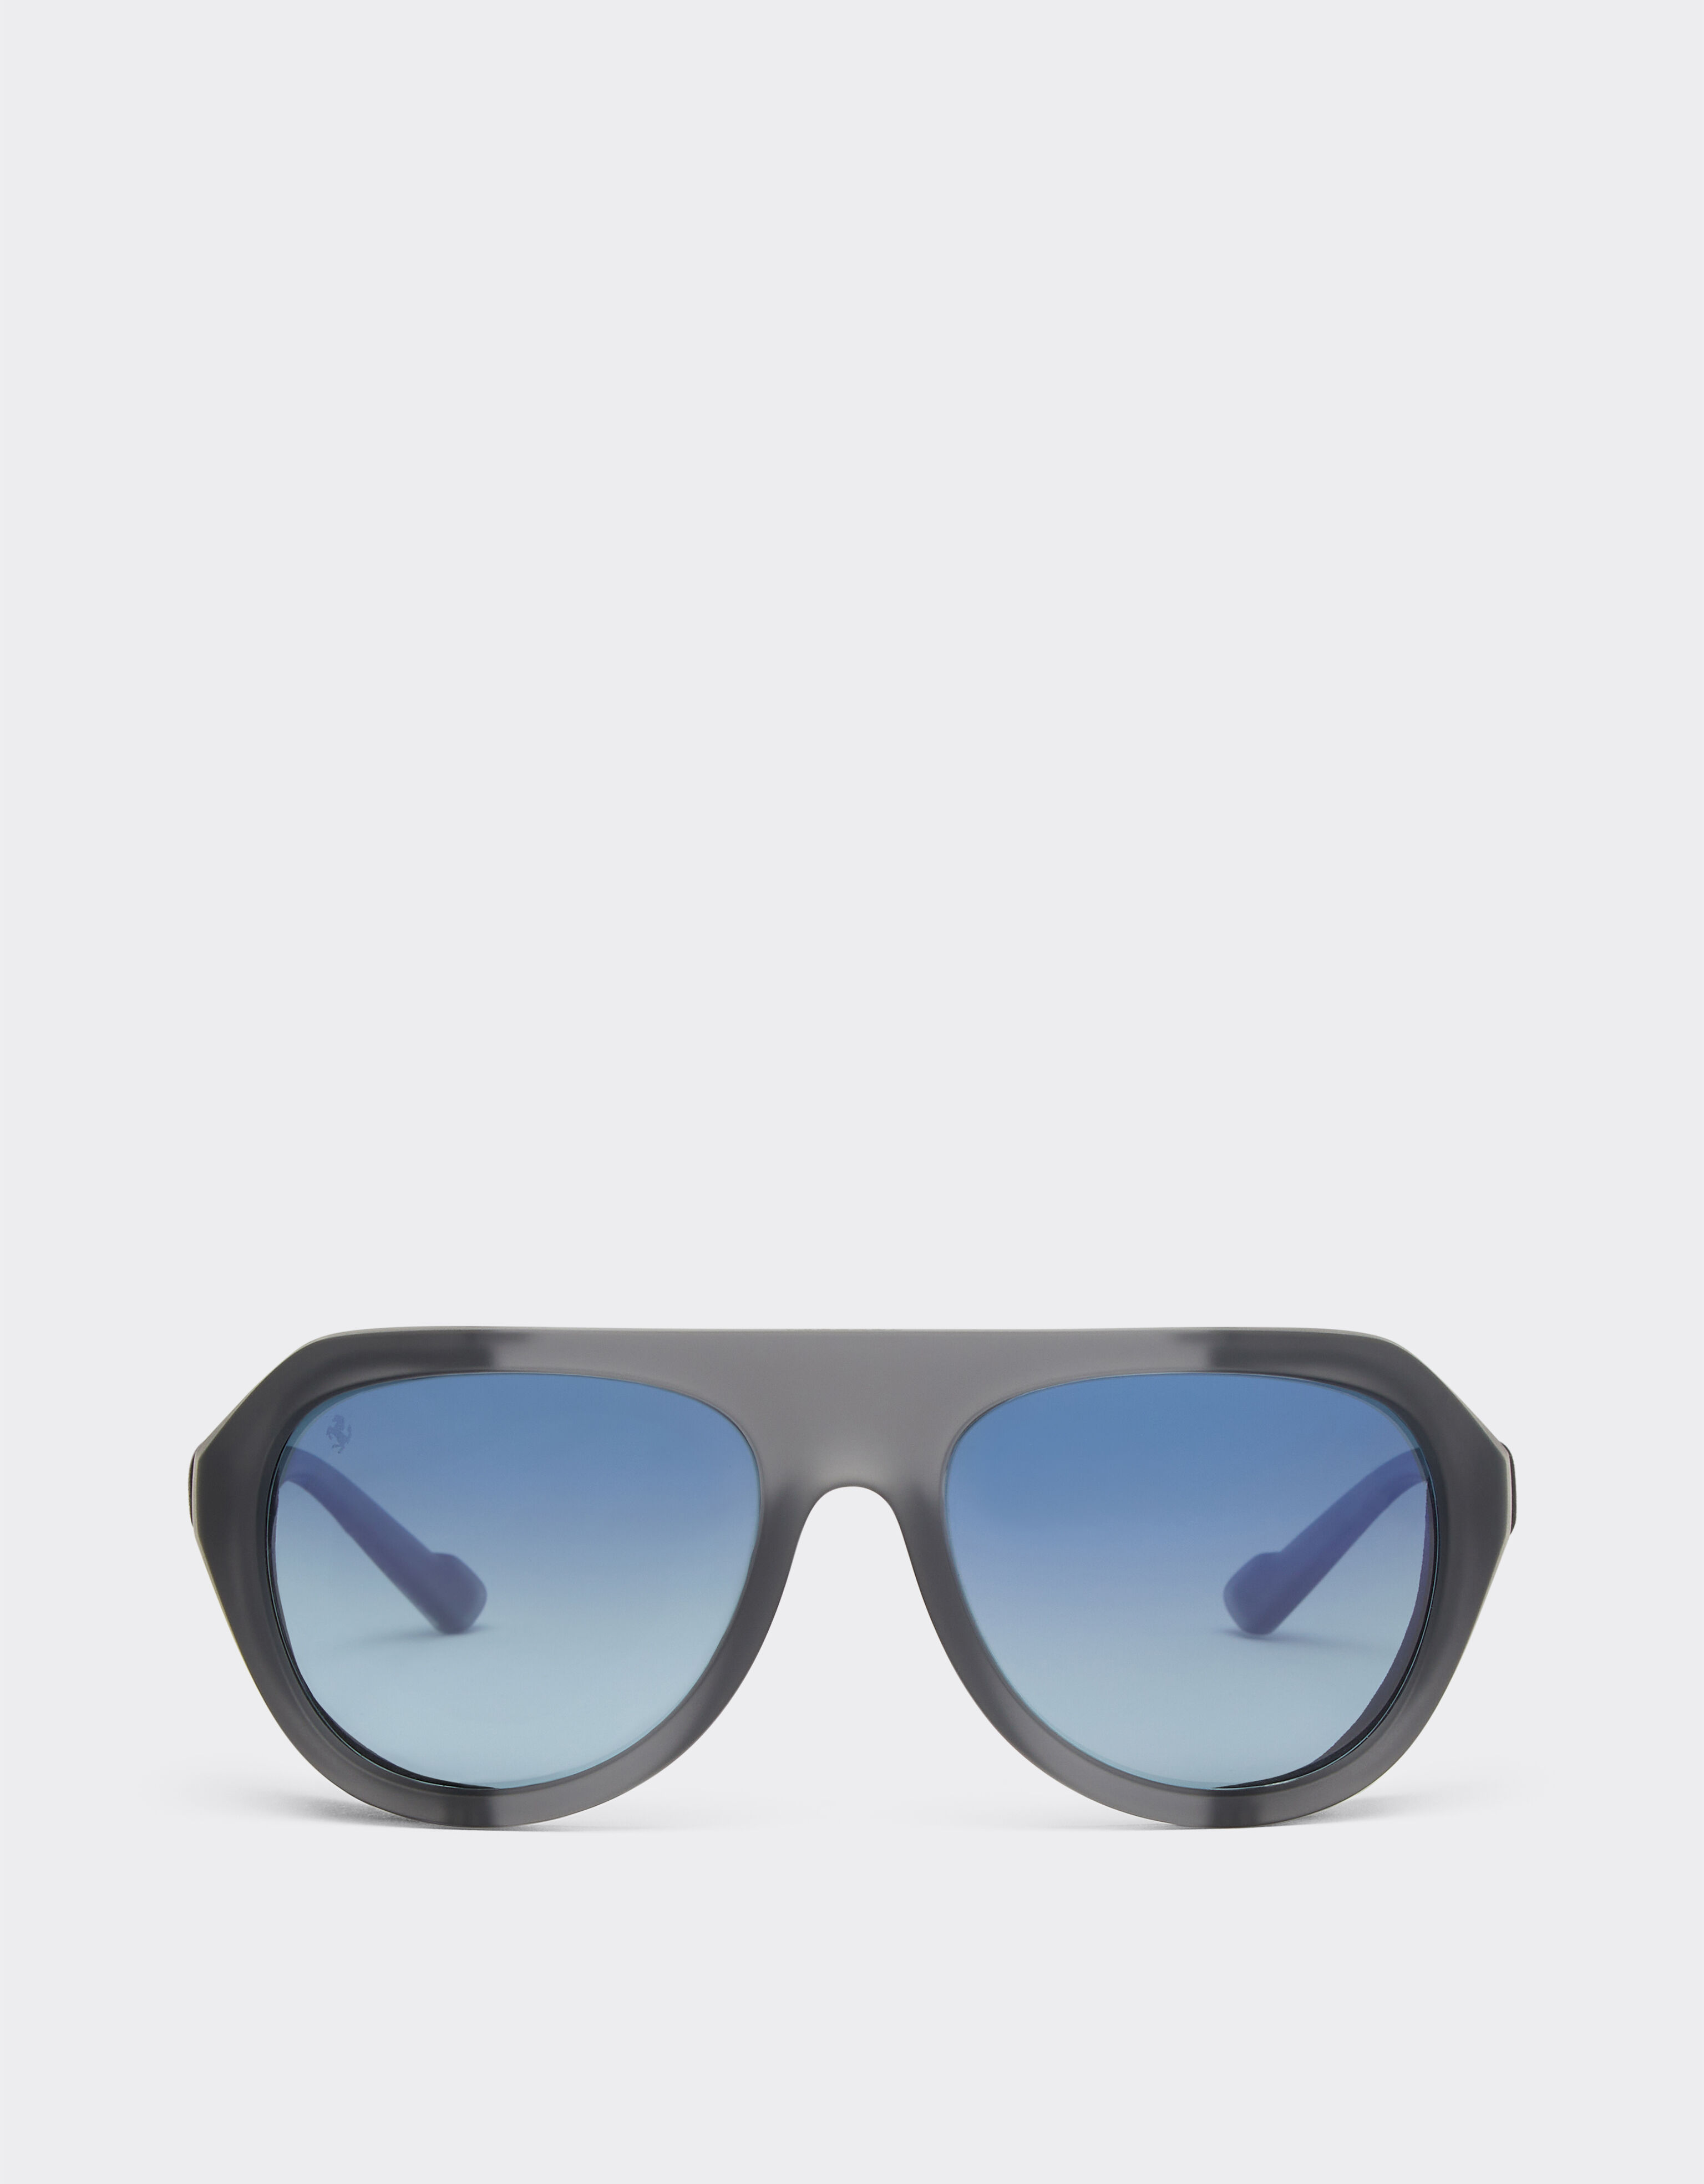 Ferrari Ferrari matt grey sunglasses with leather details and polarised lenses Black F1201f